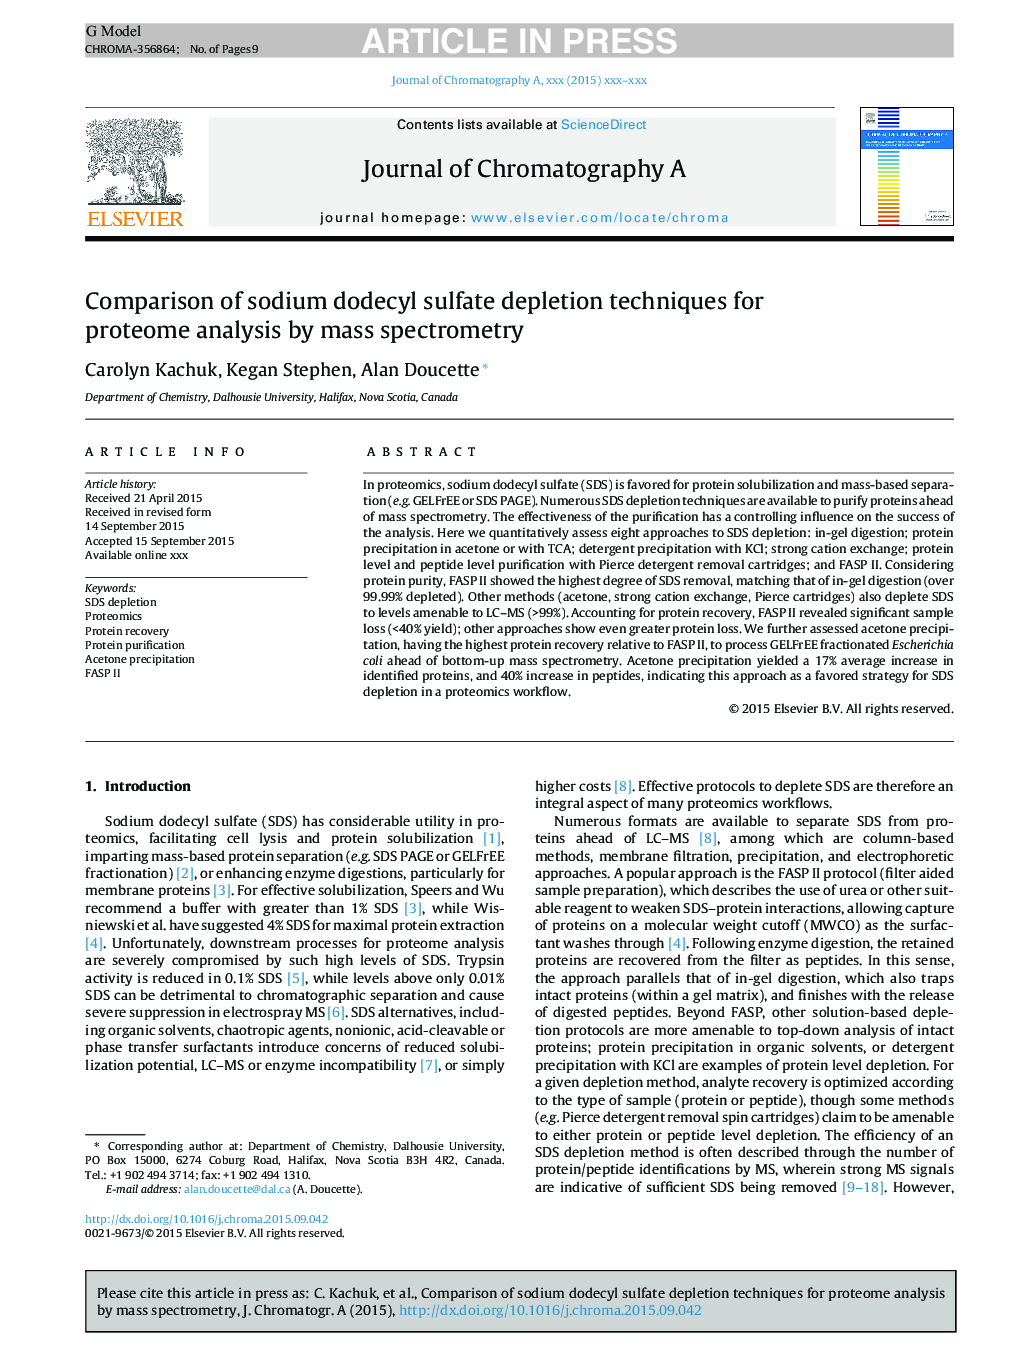 مقایسه روشهای تخلیه سدیم دودسیل سولفات برای تجزیه پروتئوم با استفاده از طیف سنجی جرمی 